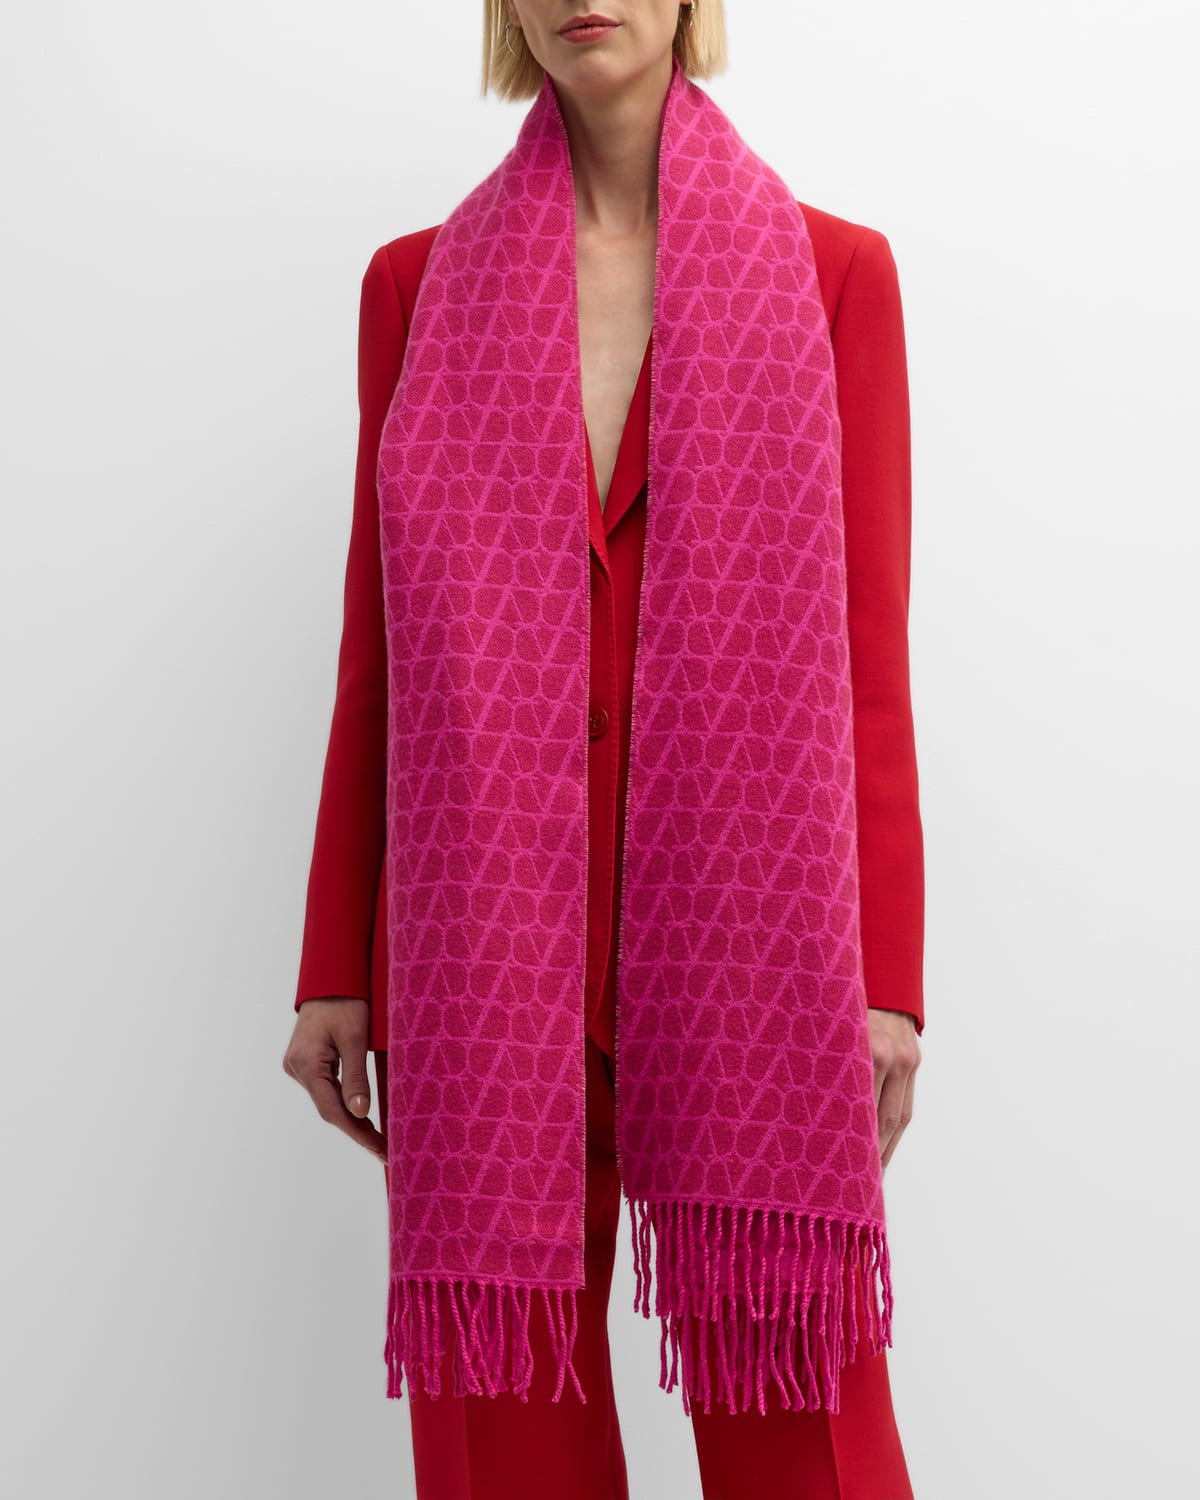 Valentino Garavani Toile Iconographe Jacquard Cashmere-blend Stole In Pink Chiaro Pink